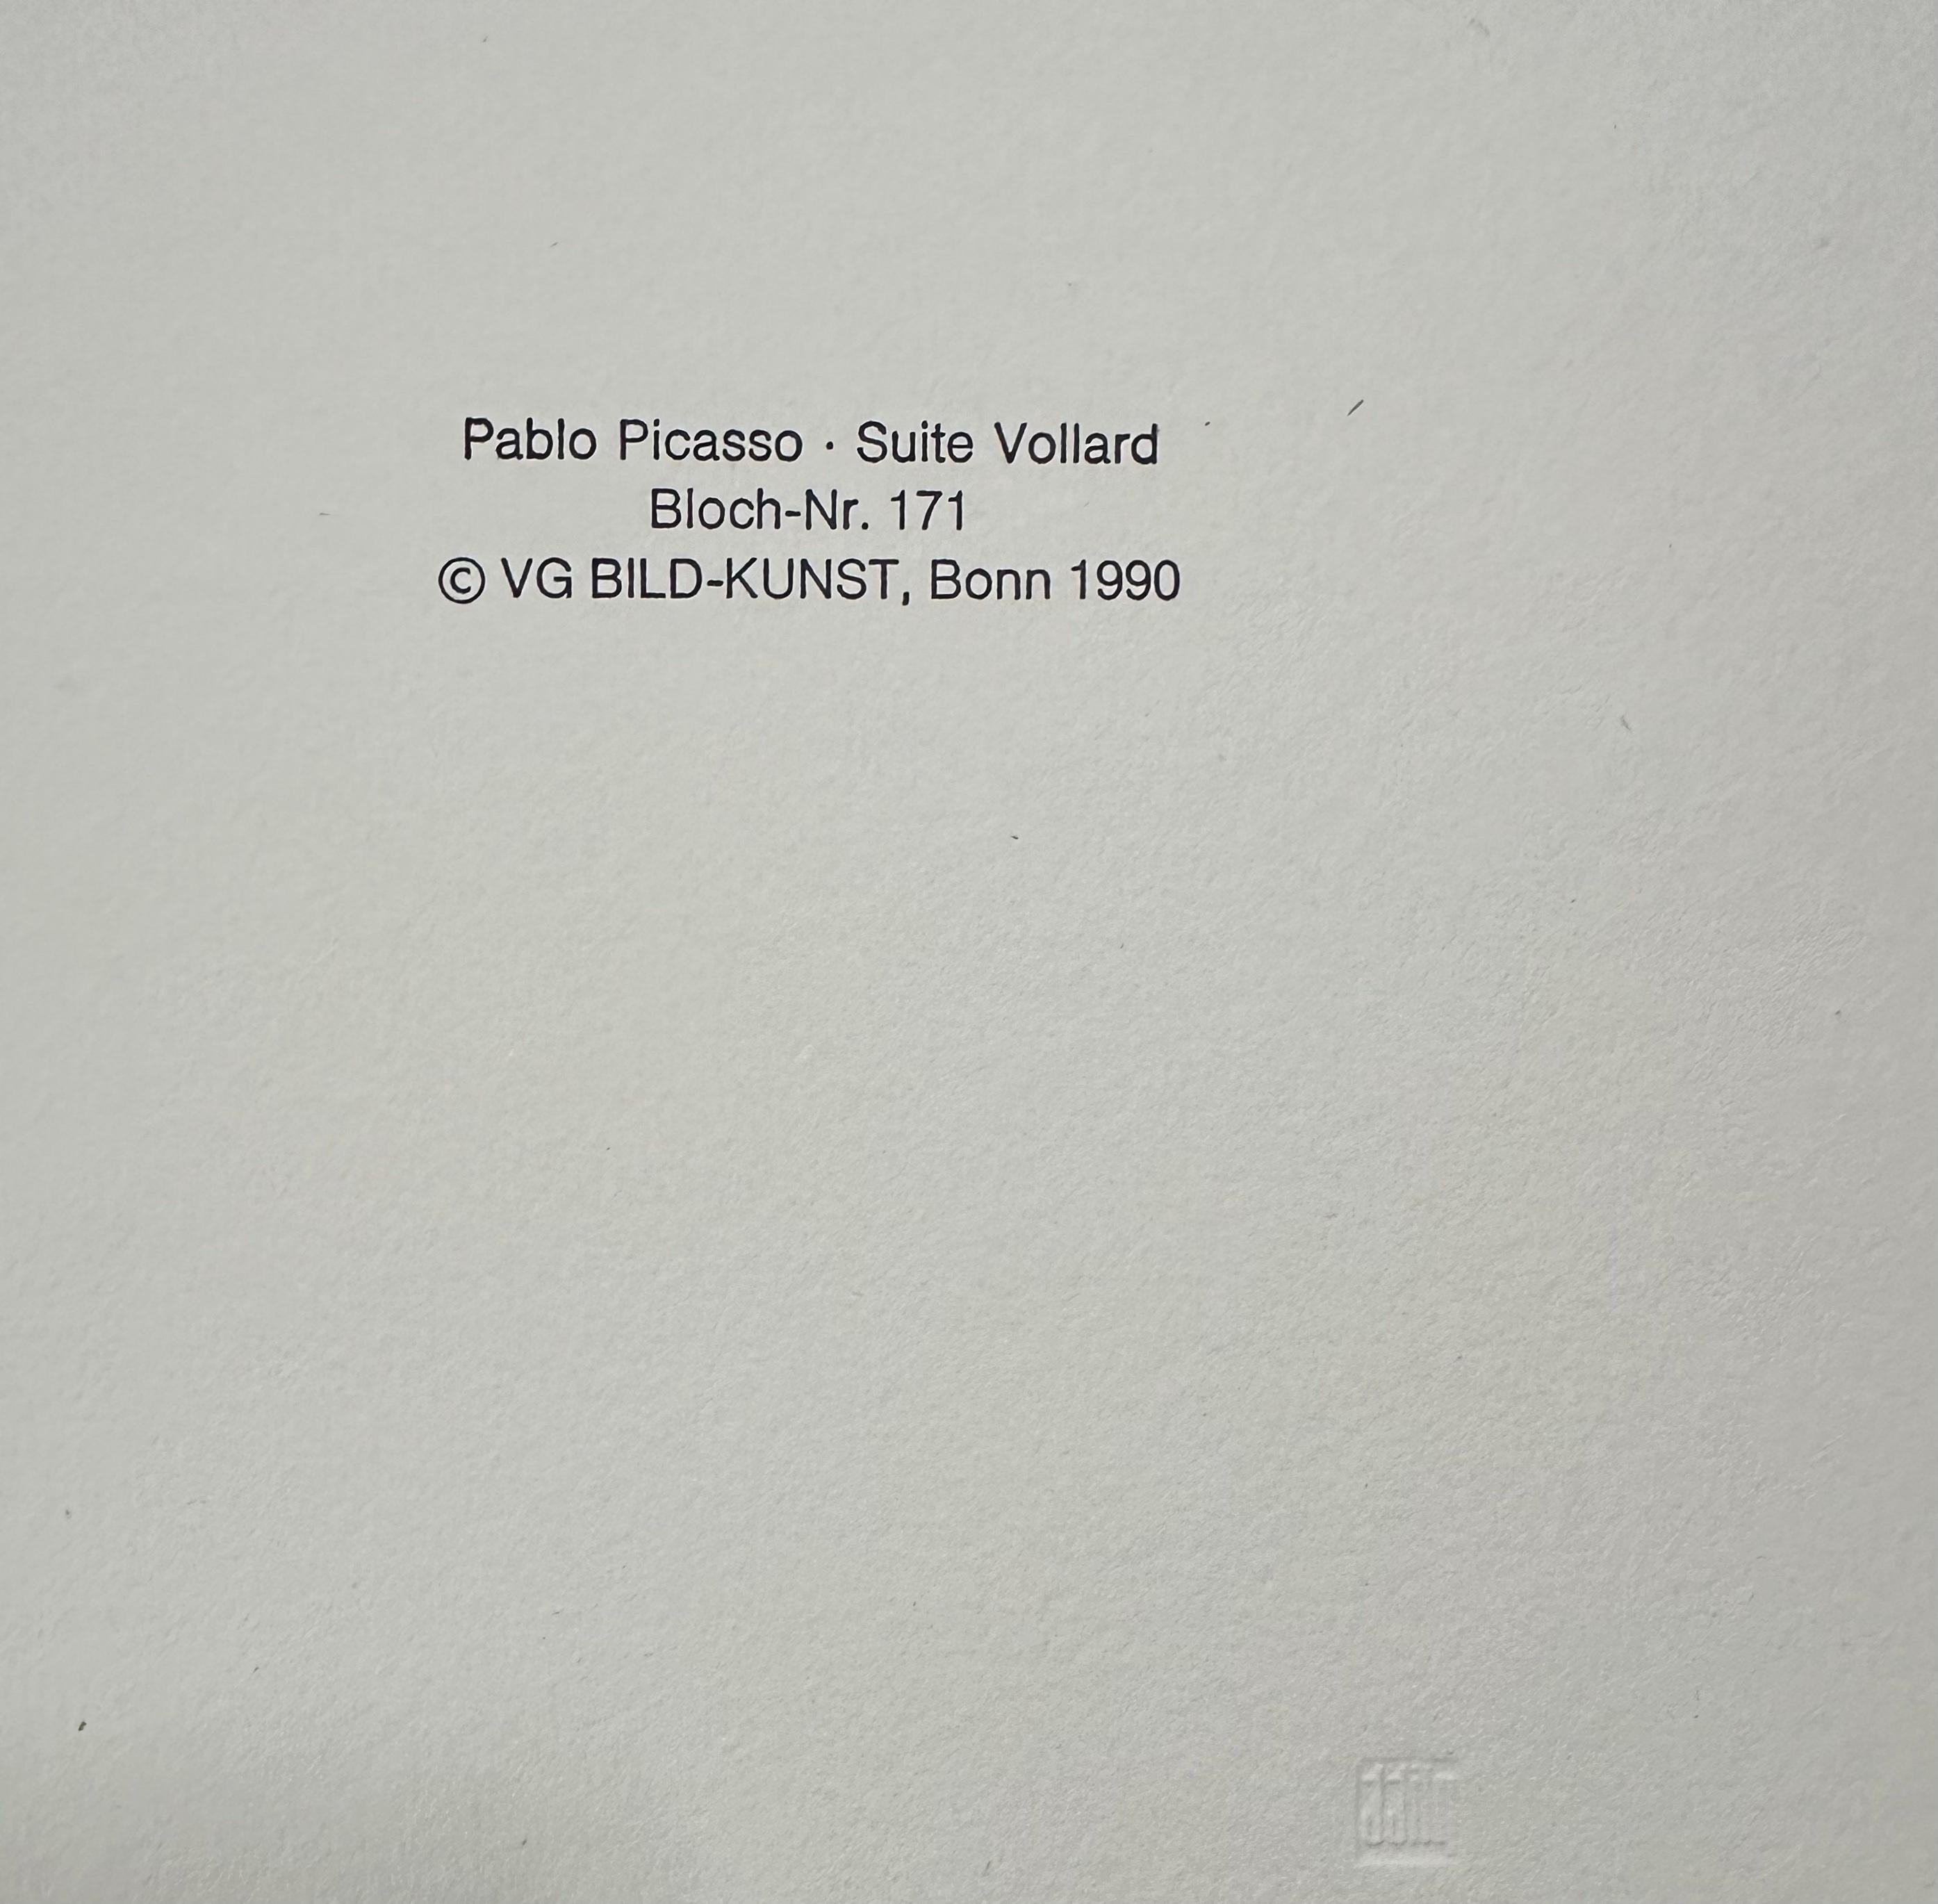 Pablo Picasso, Le Repos du Sculpteur, I - Modern Print by (after) Pablo Picasso